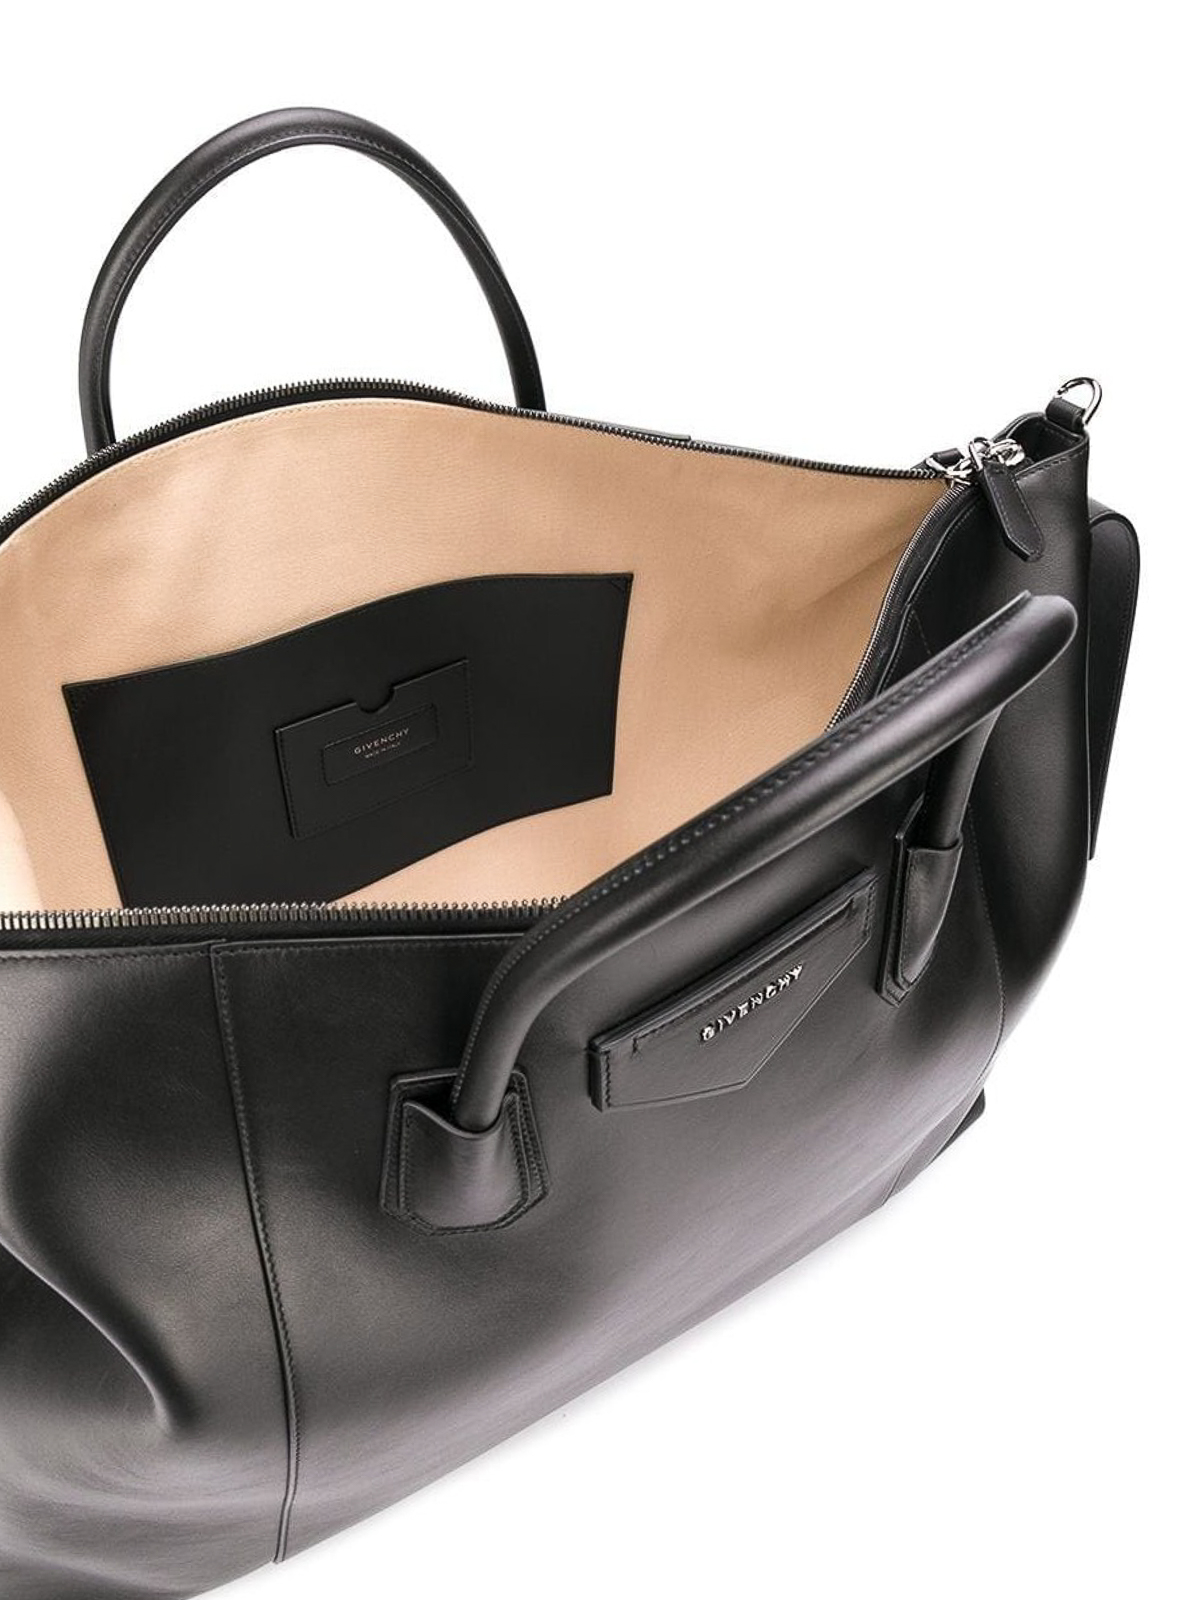 Luggage & Travel bags Givenchy - Large Antigona Soft travel bag -  BK507PK0ZZ001